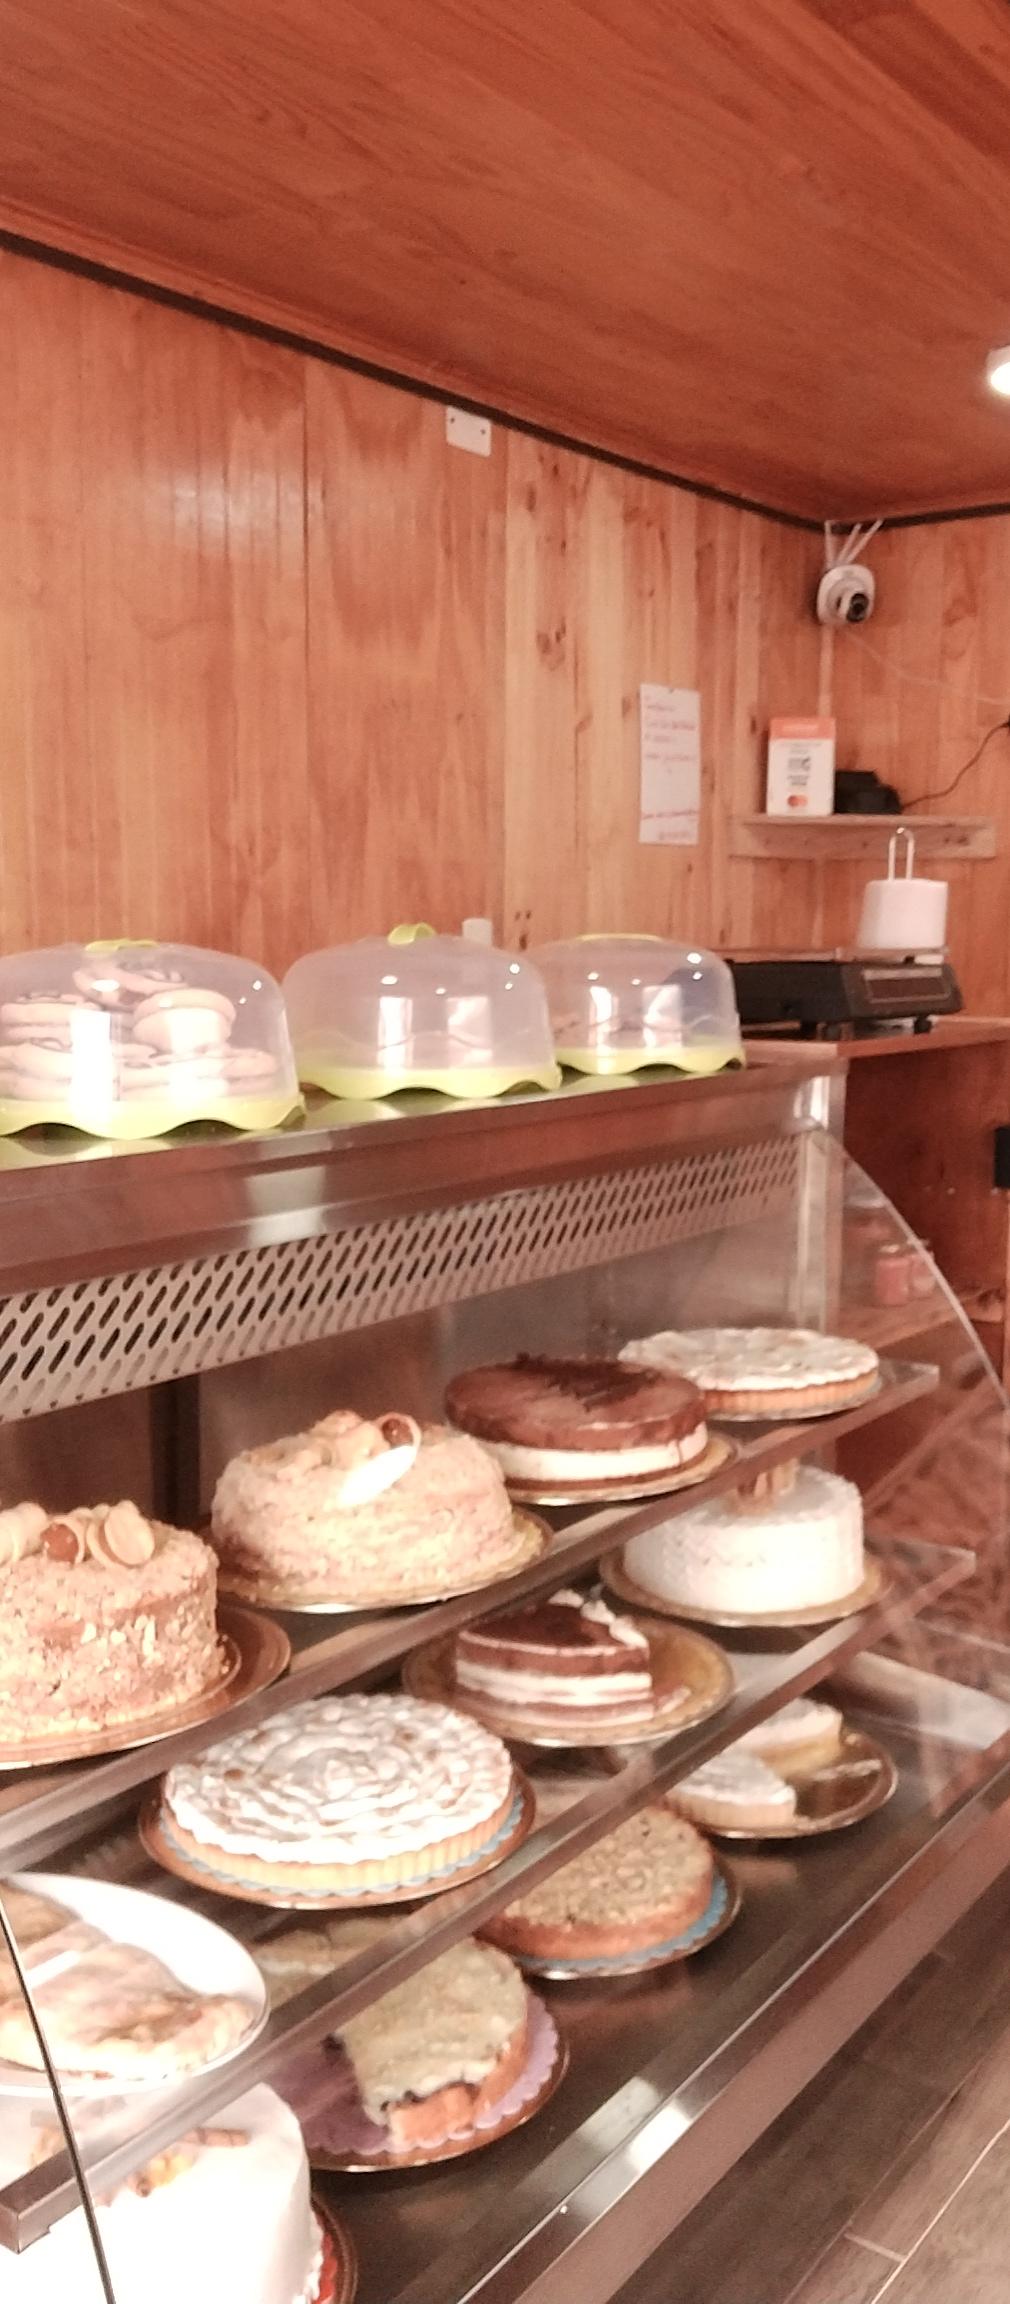 Pastelería y cafetería Delicias de Hornopiren 